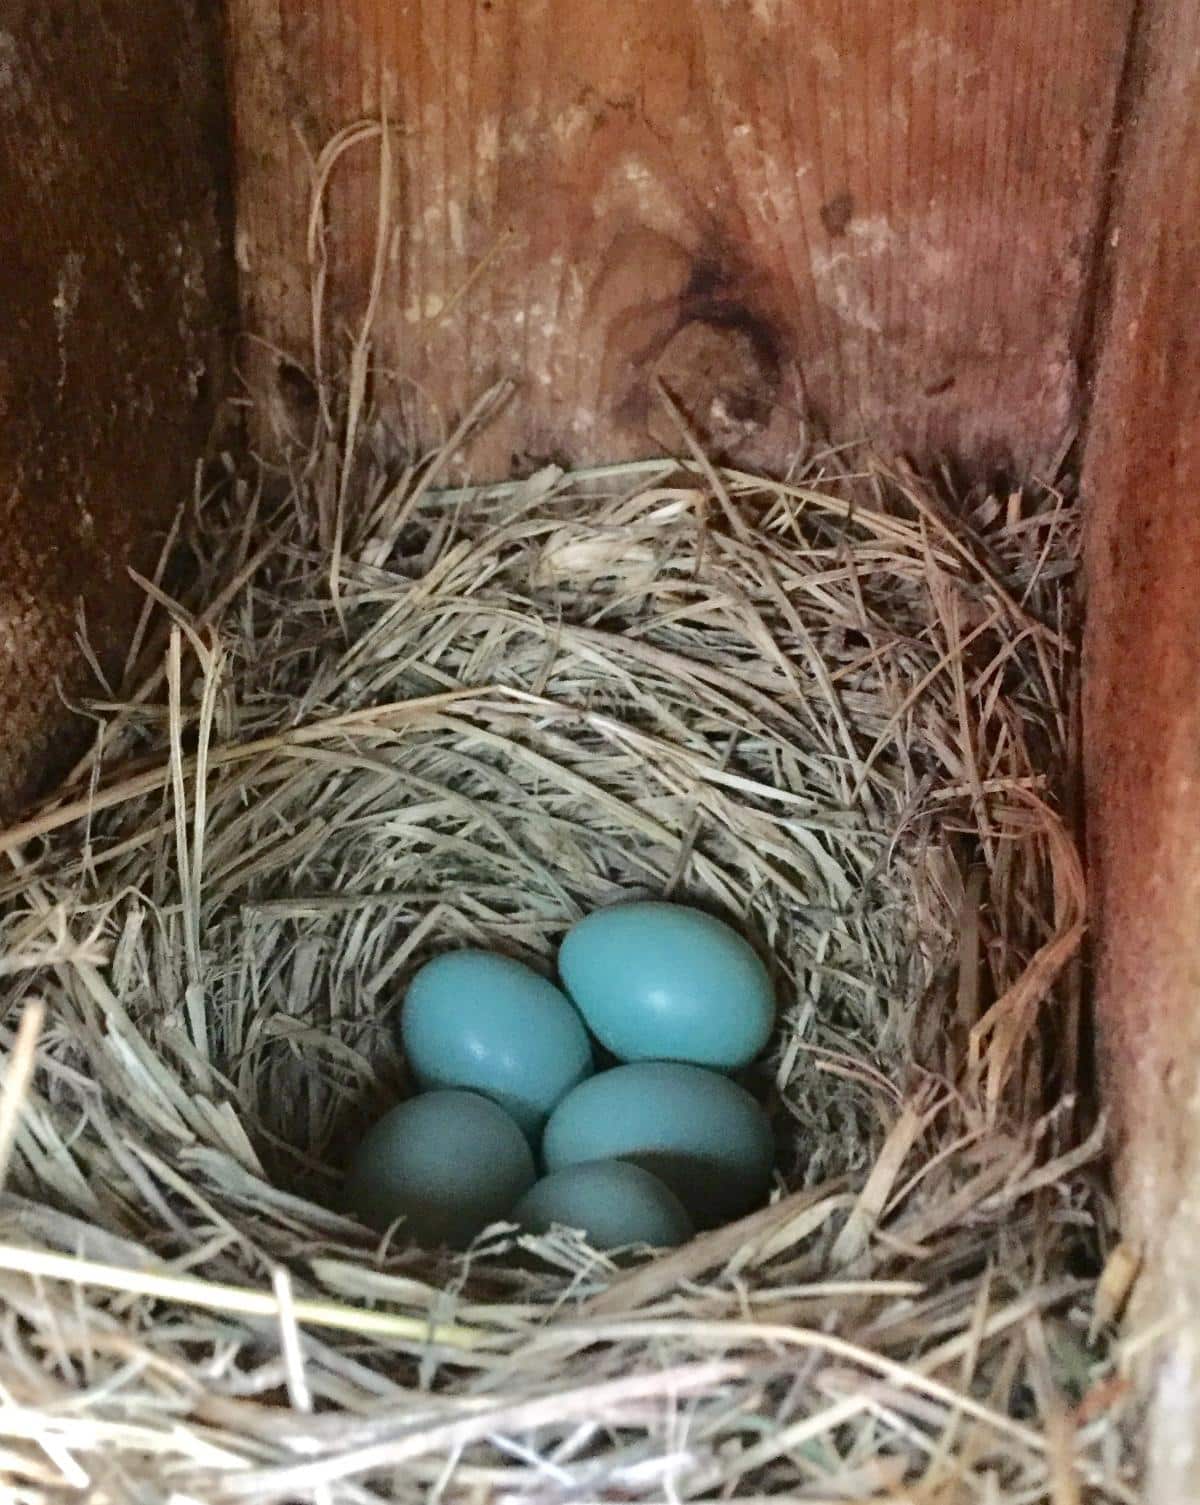 A clutch of bluebird eggs